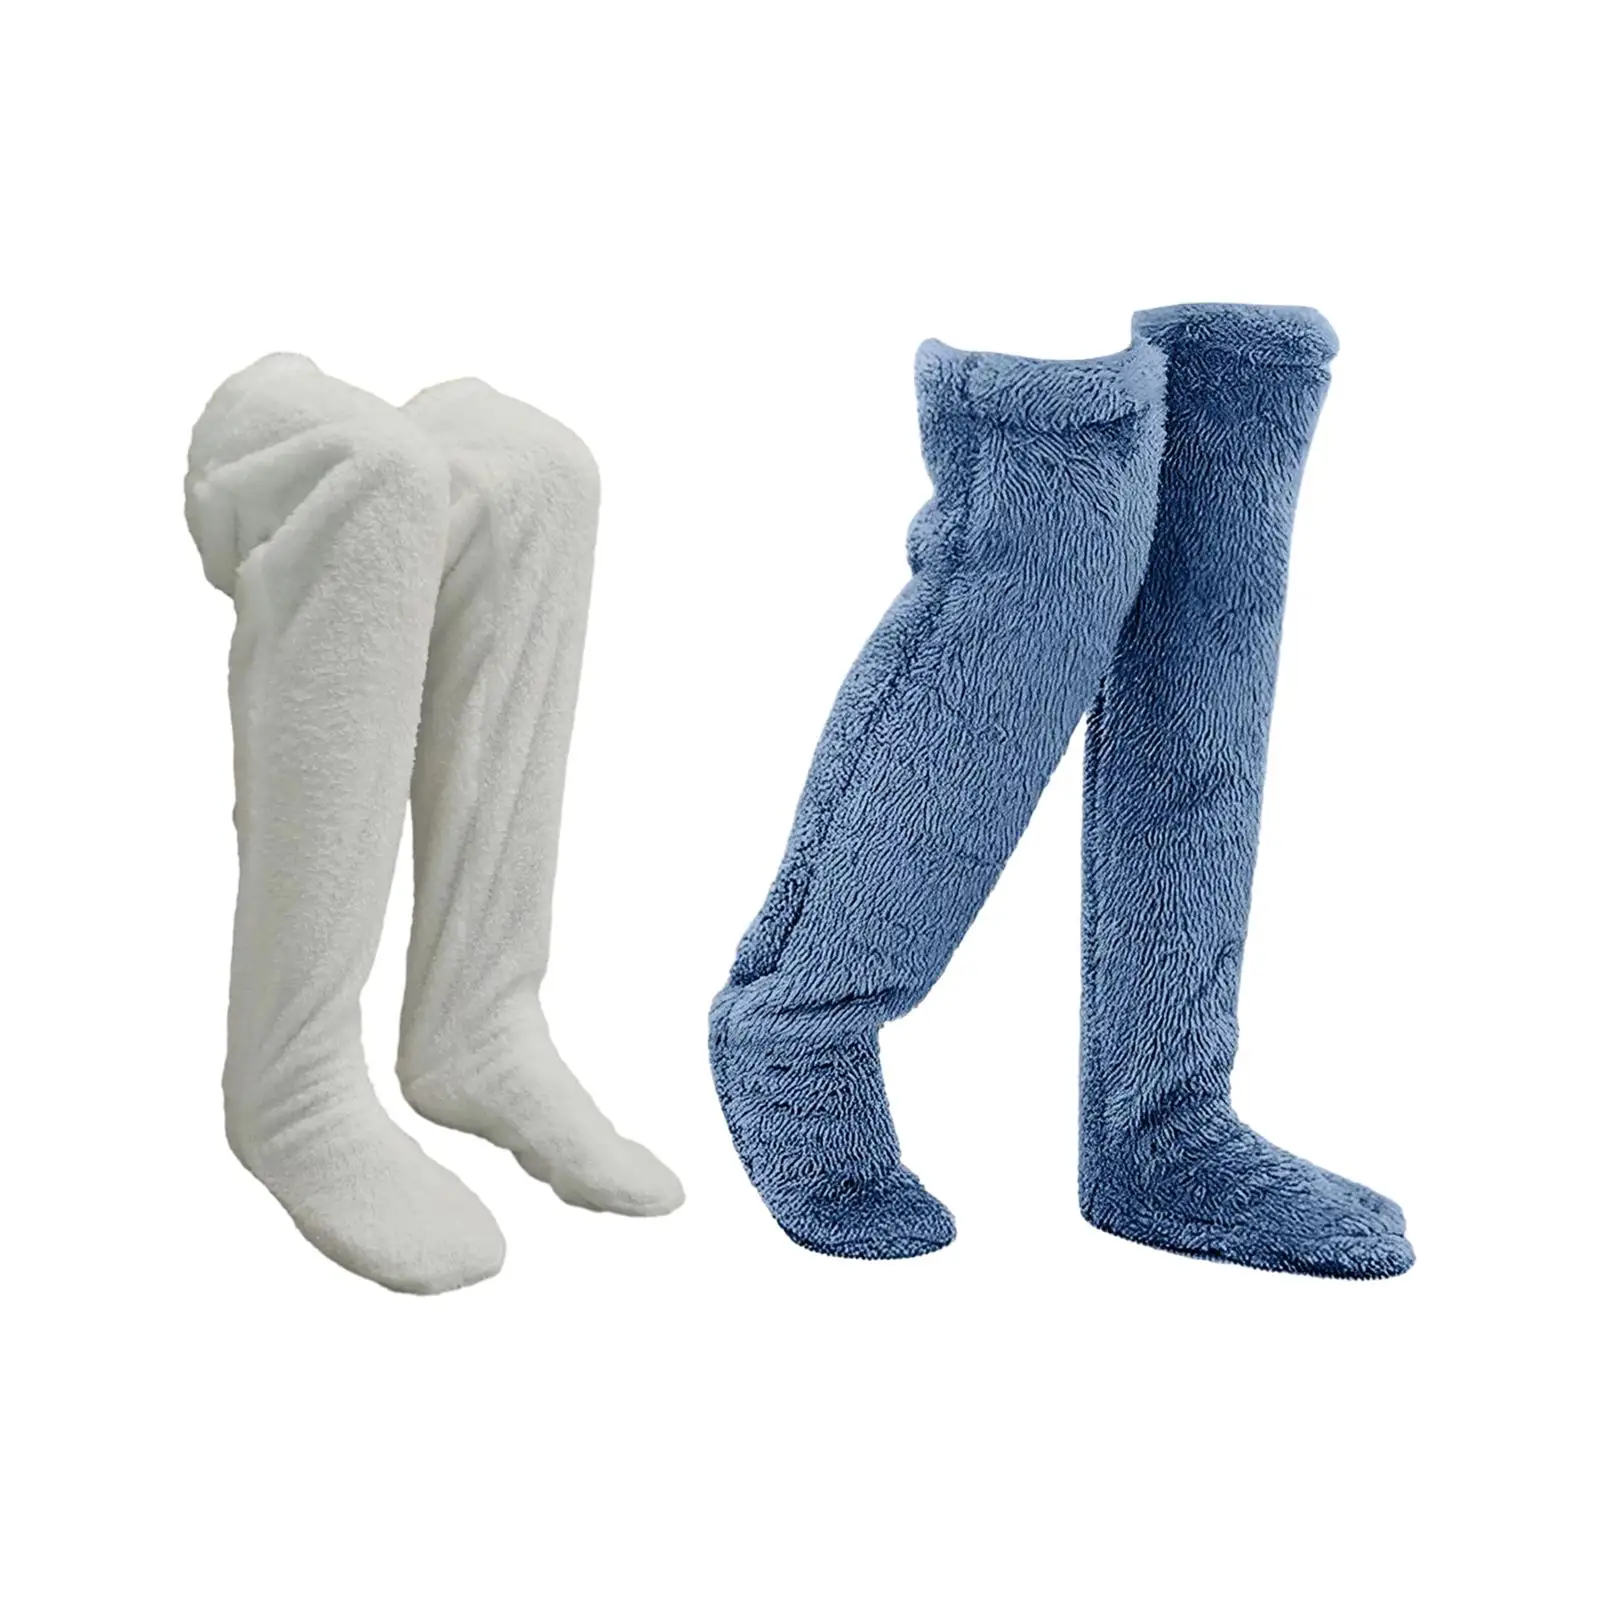 Plush Slipper Stockings Furry Long Leg Warmers for Women Men Over Knee High Fuzzy Socks Winter Home Sleeping Socks